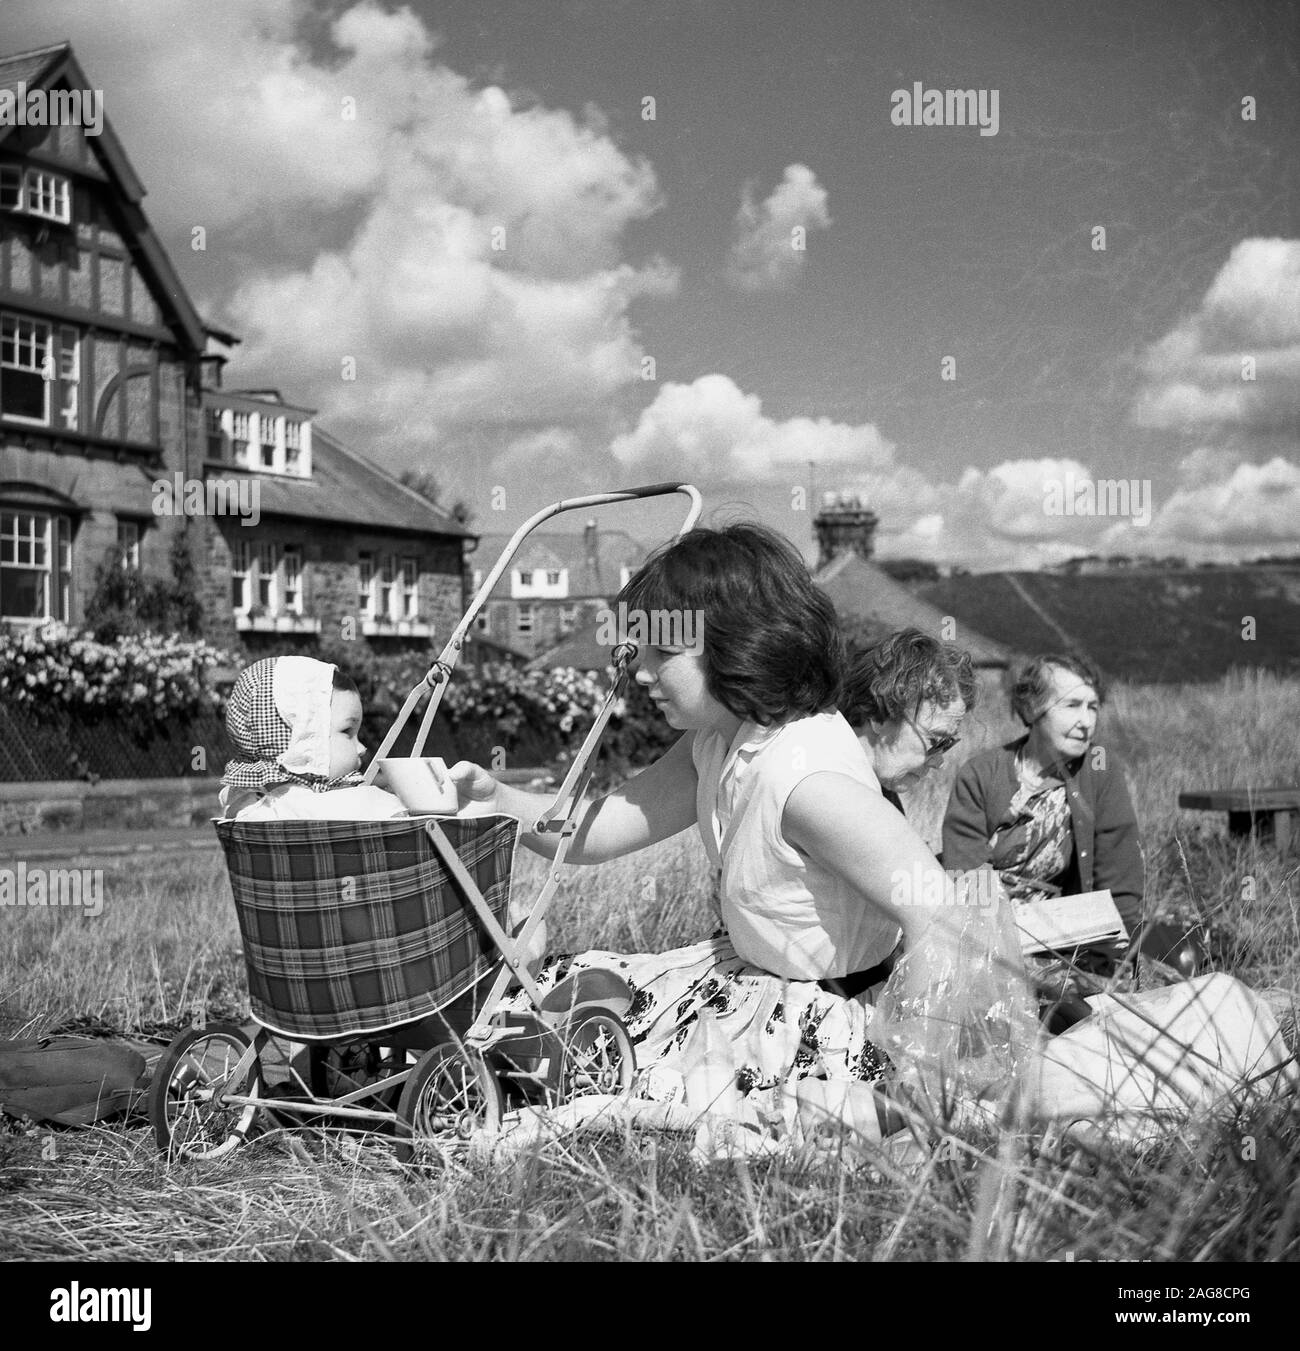 Anni '1960, storica, una madre e un bambino sedevano in un piccolo buggy o passeggino con un posto a sedere in tartan, seduti all'esterno su un'area erbosa alcune case, Inghilterra, Regno Unito. Foto Stock